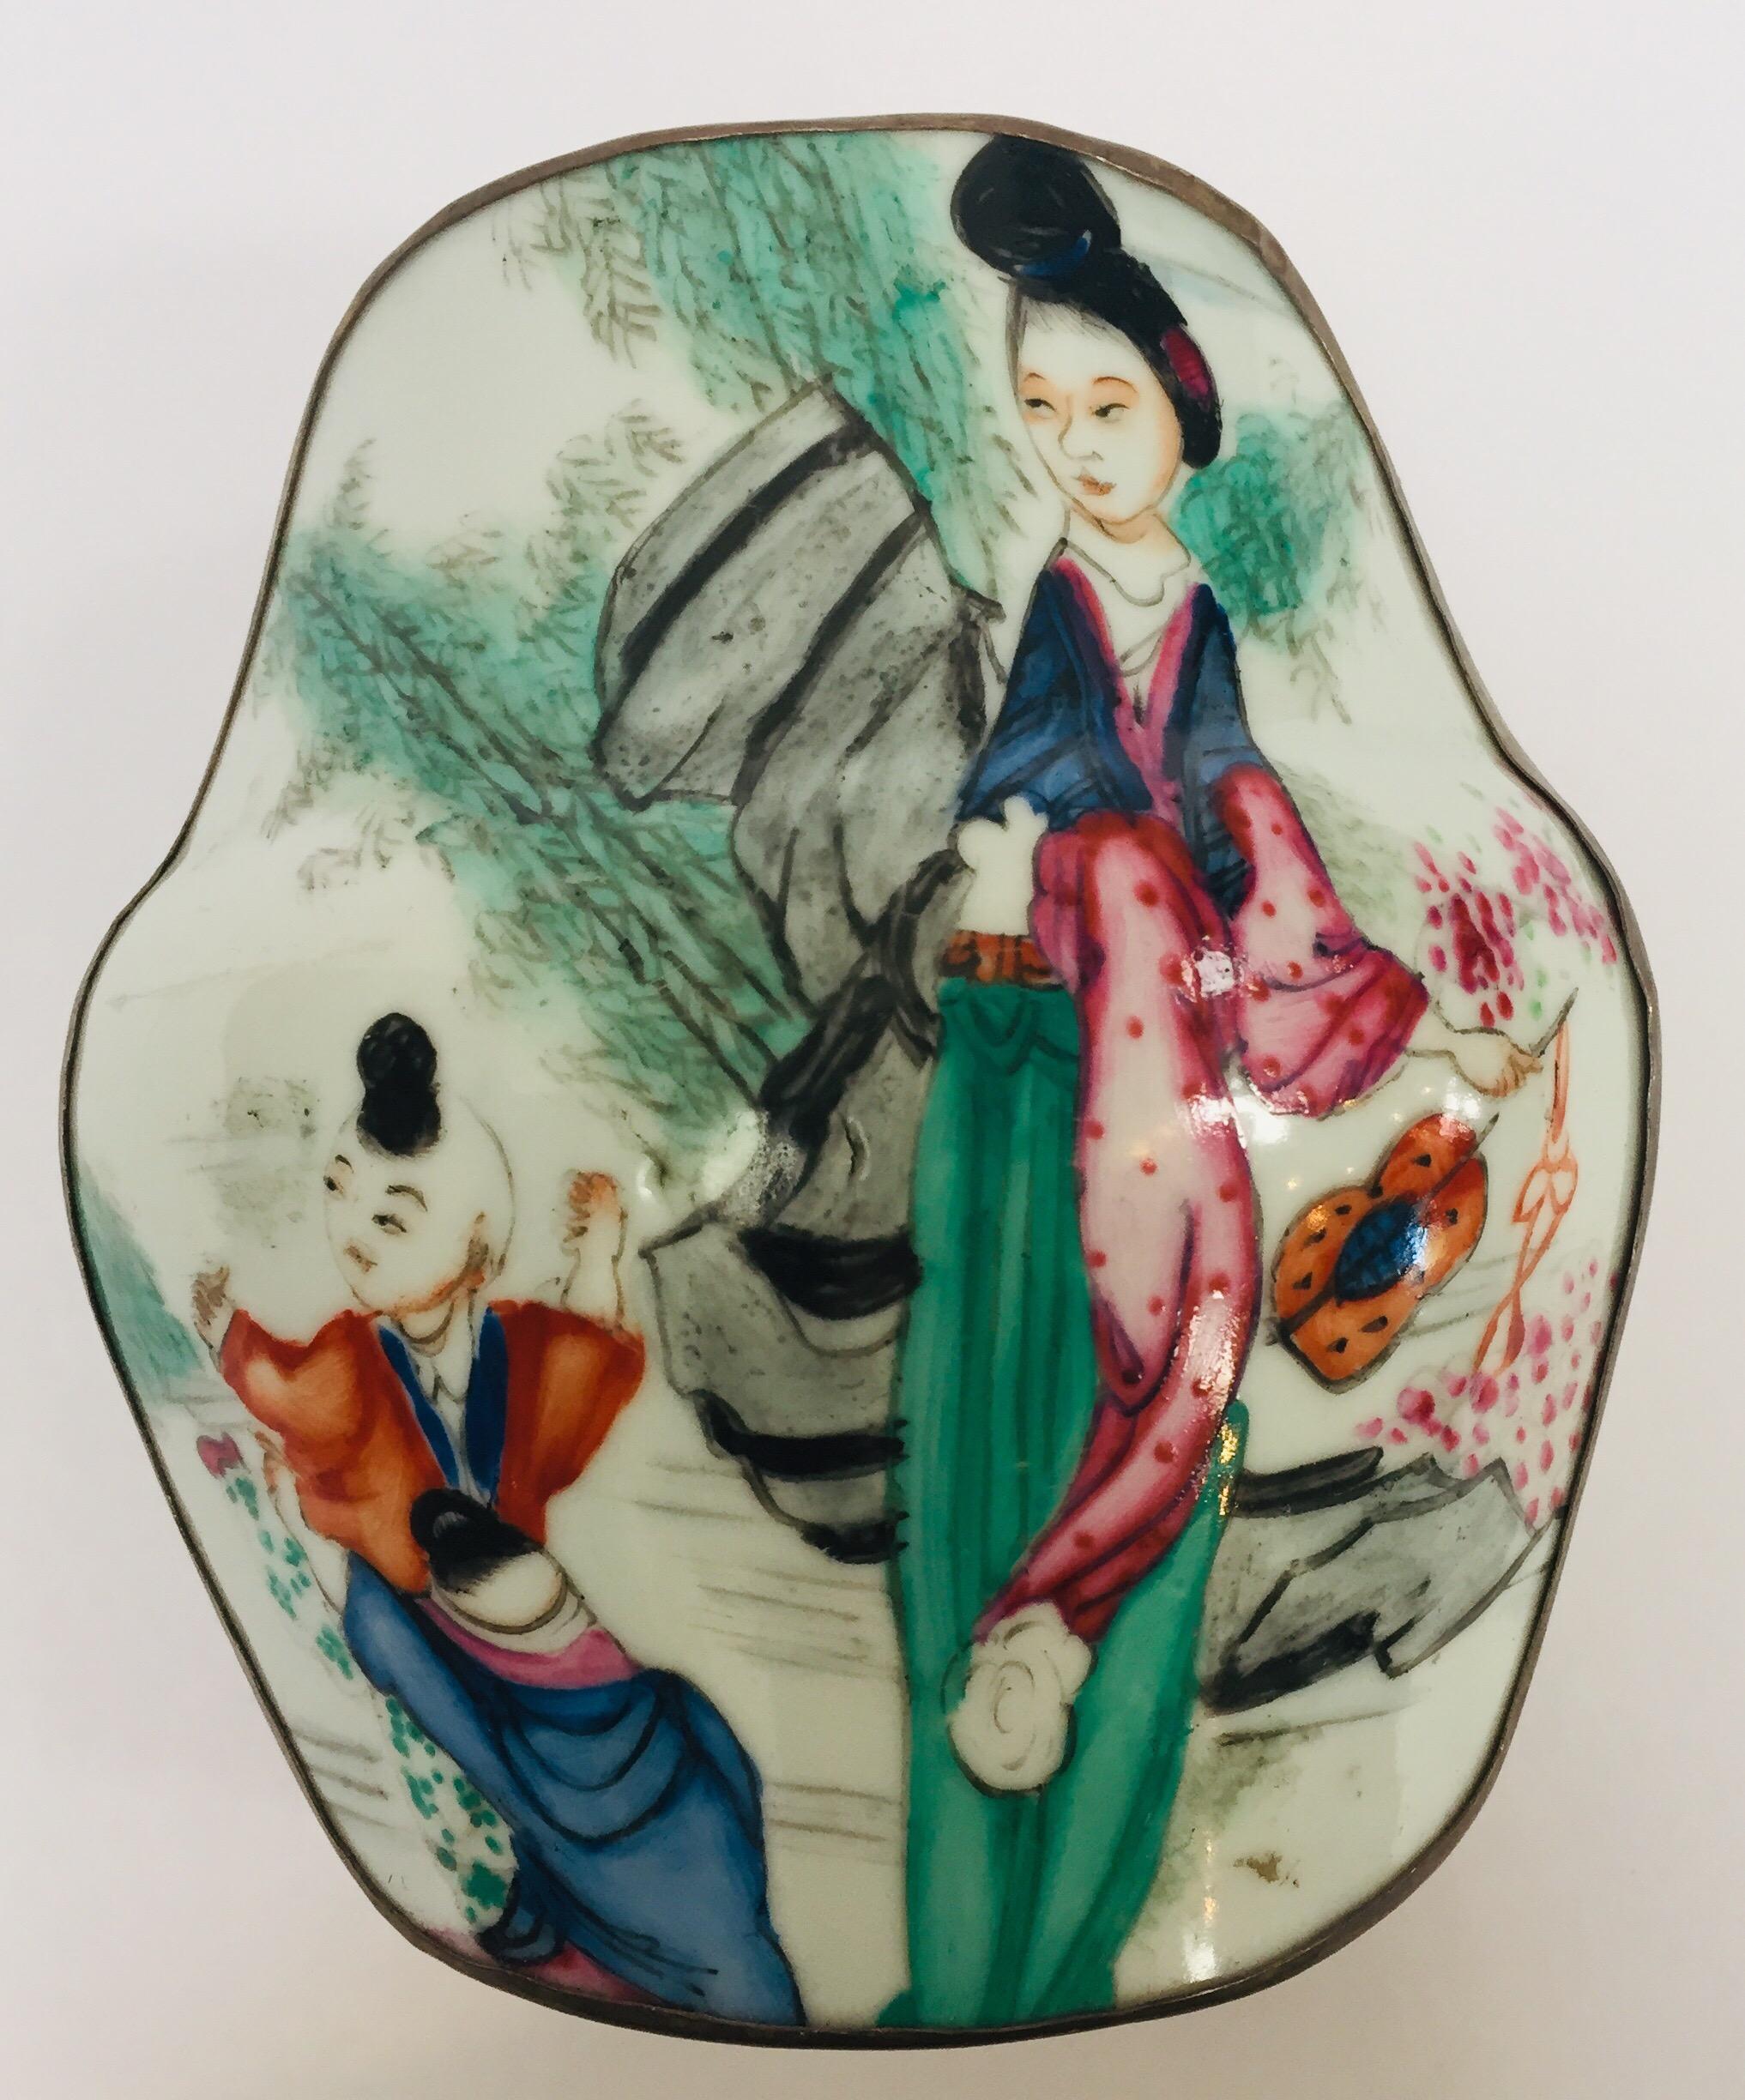 Schmuckdose aus Metall und Porzellan mit handgemalter japanischer Szene.
Metall versilbert mit Porzellan oben handbemalt mit einer Szene im Freien mit einer Mutter und Kind tragen traditionelle Kimonos in rosa, grün und blau Farben.
Abmessungen: